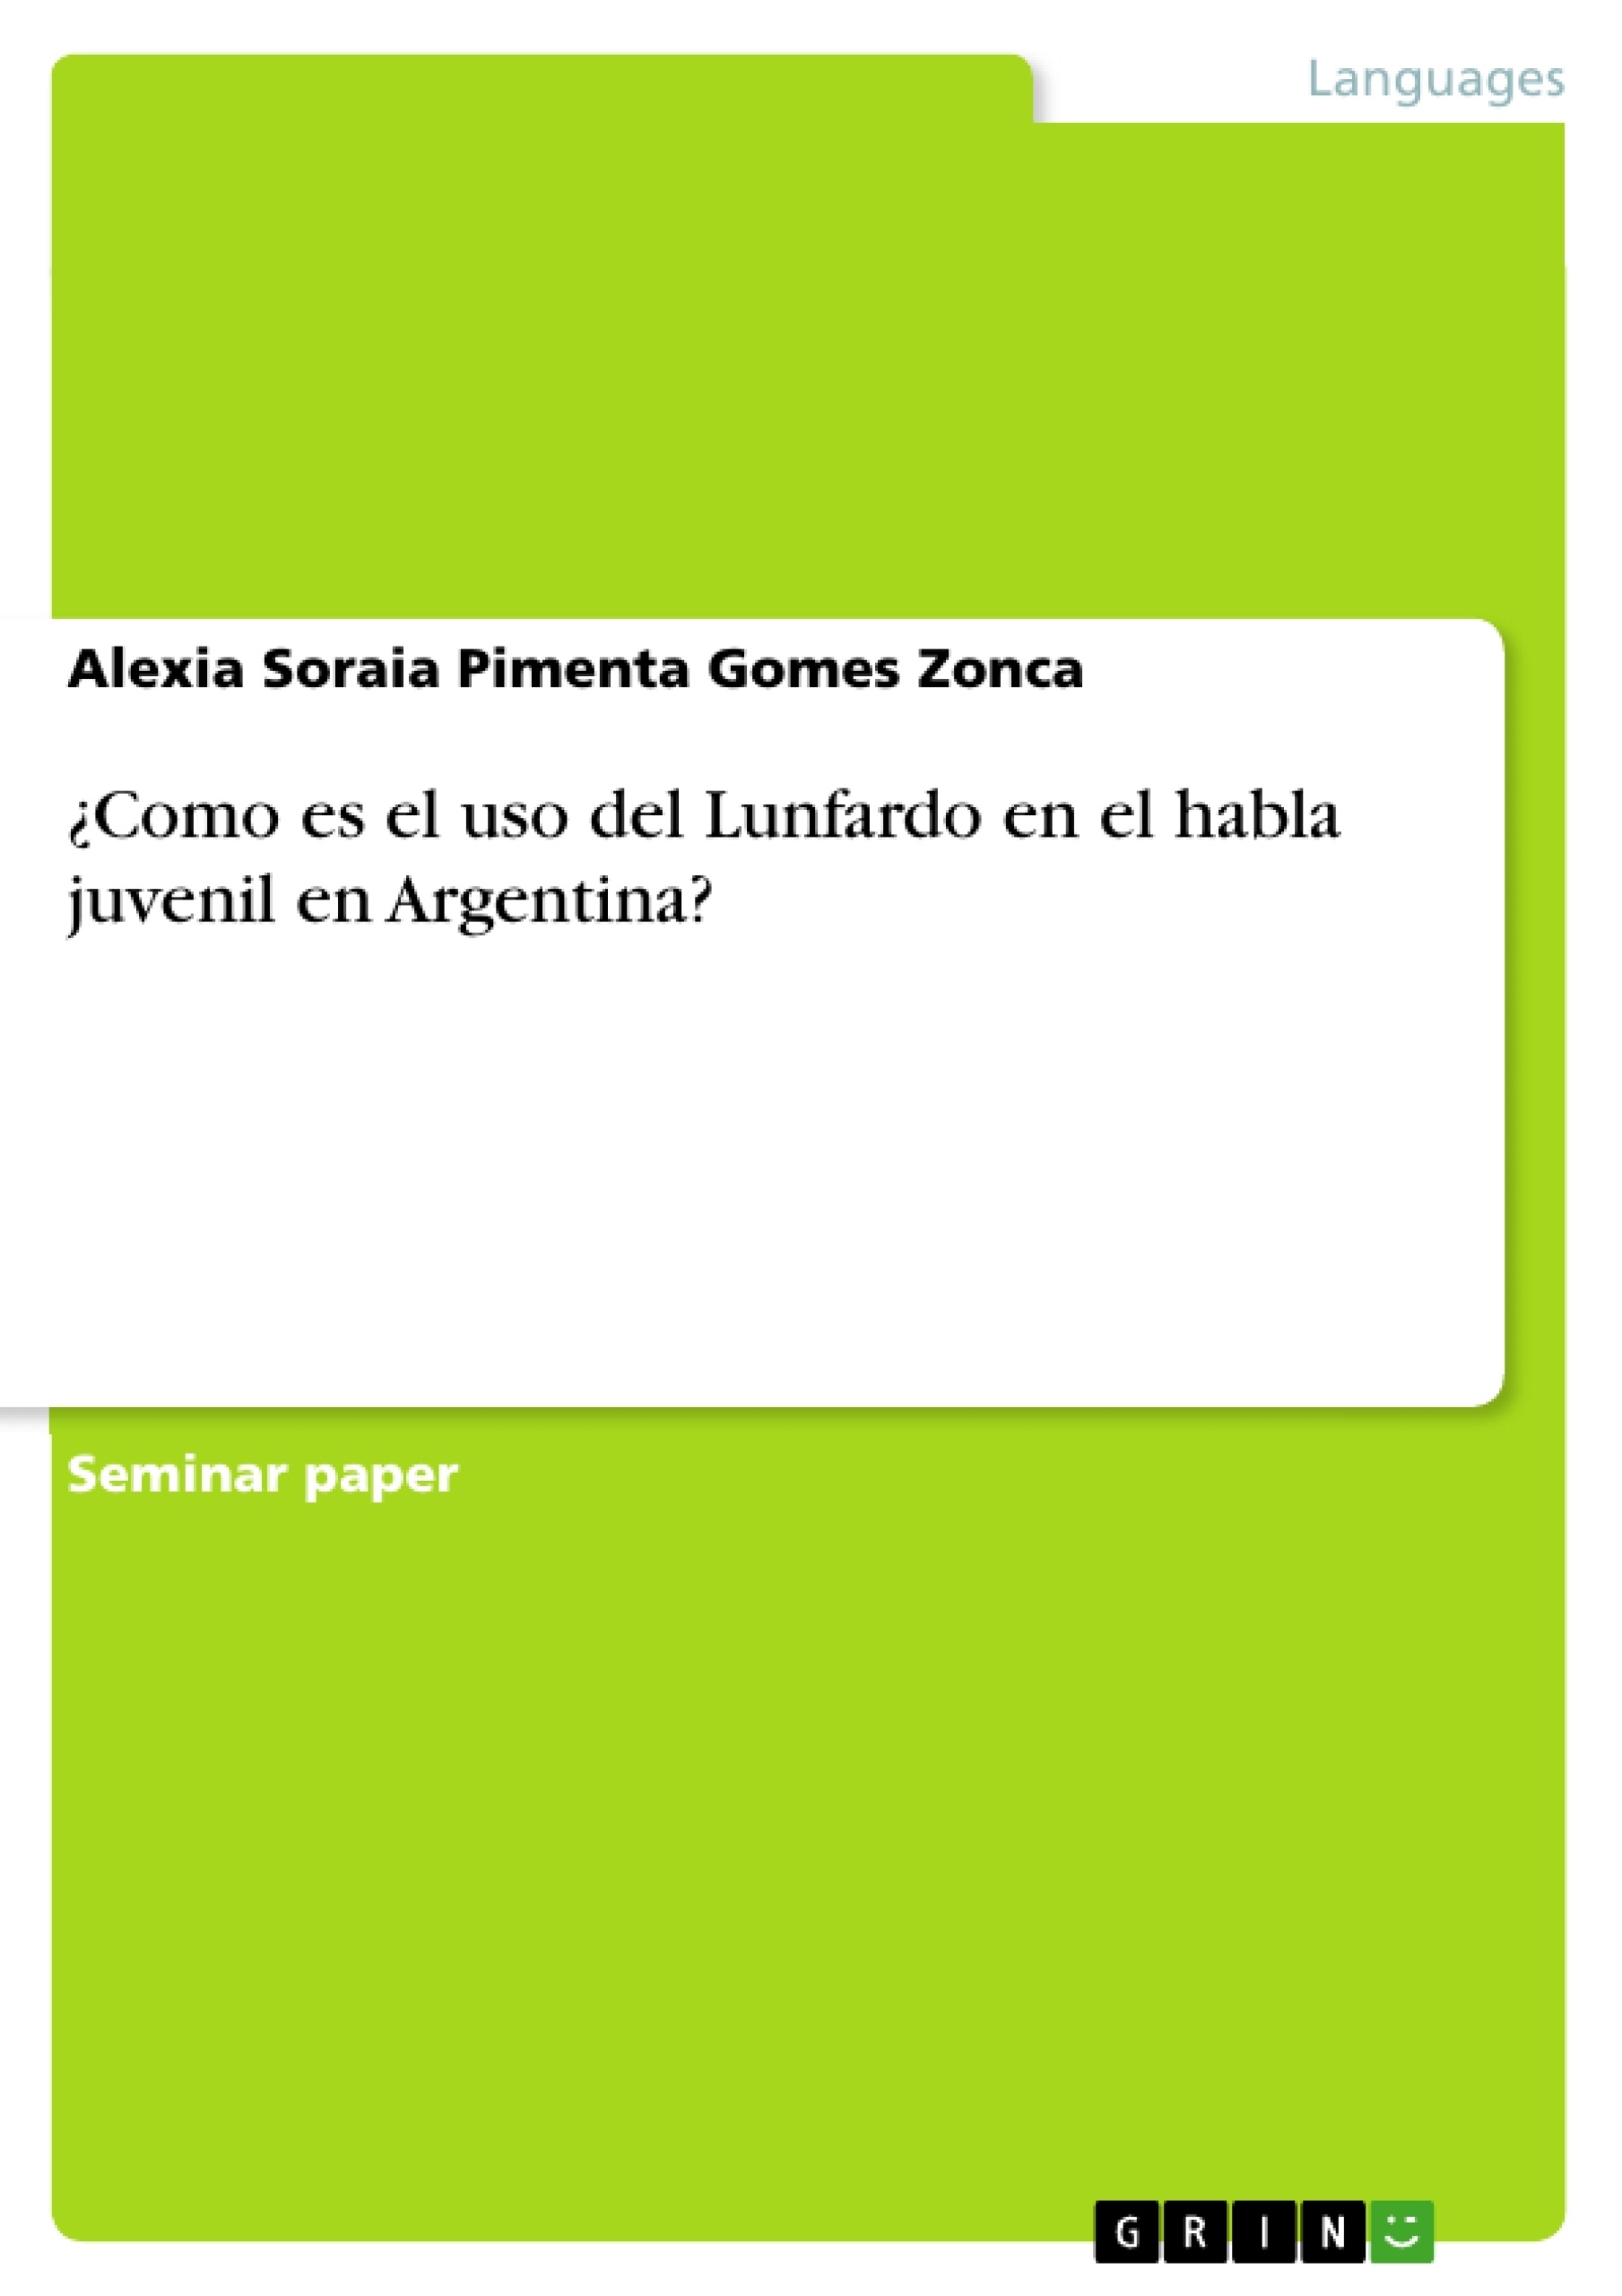 Titre: ¿Como es el uso del Lunfardo en el habla juvenil en Argentina?